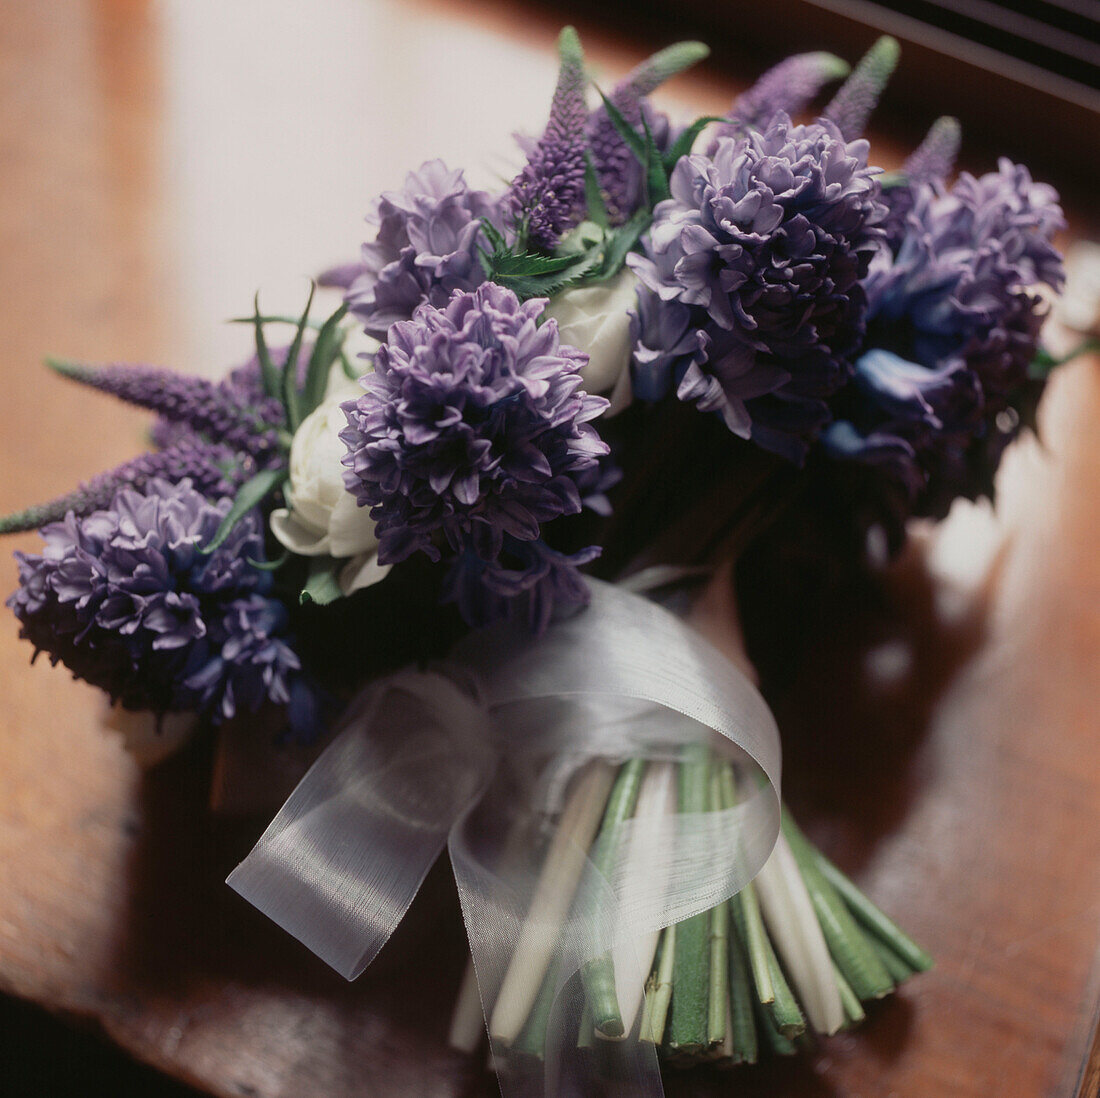 Violetter Blumenstrauß auf einer Tischplatte